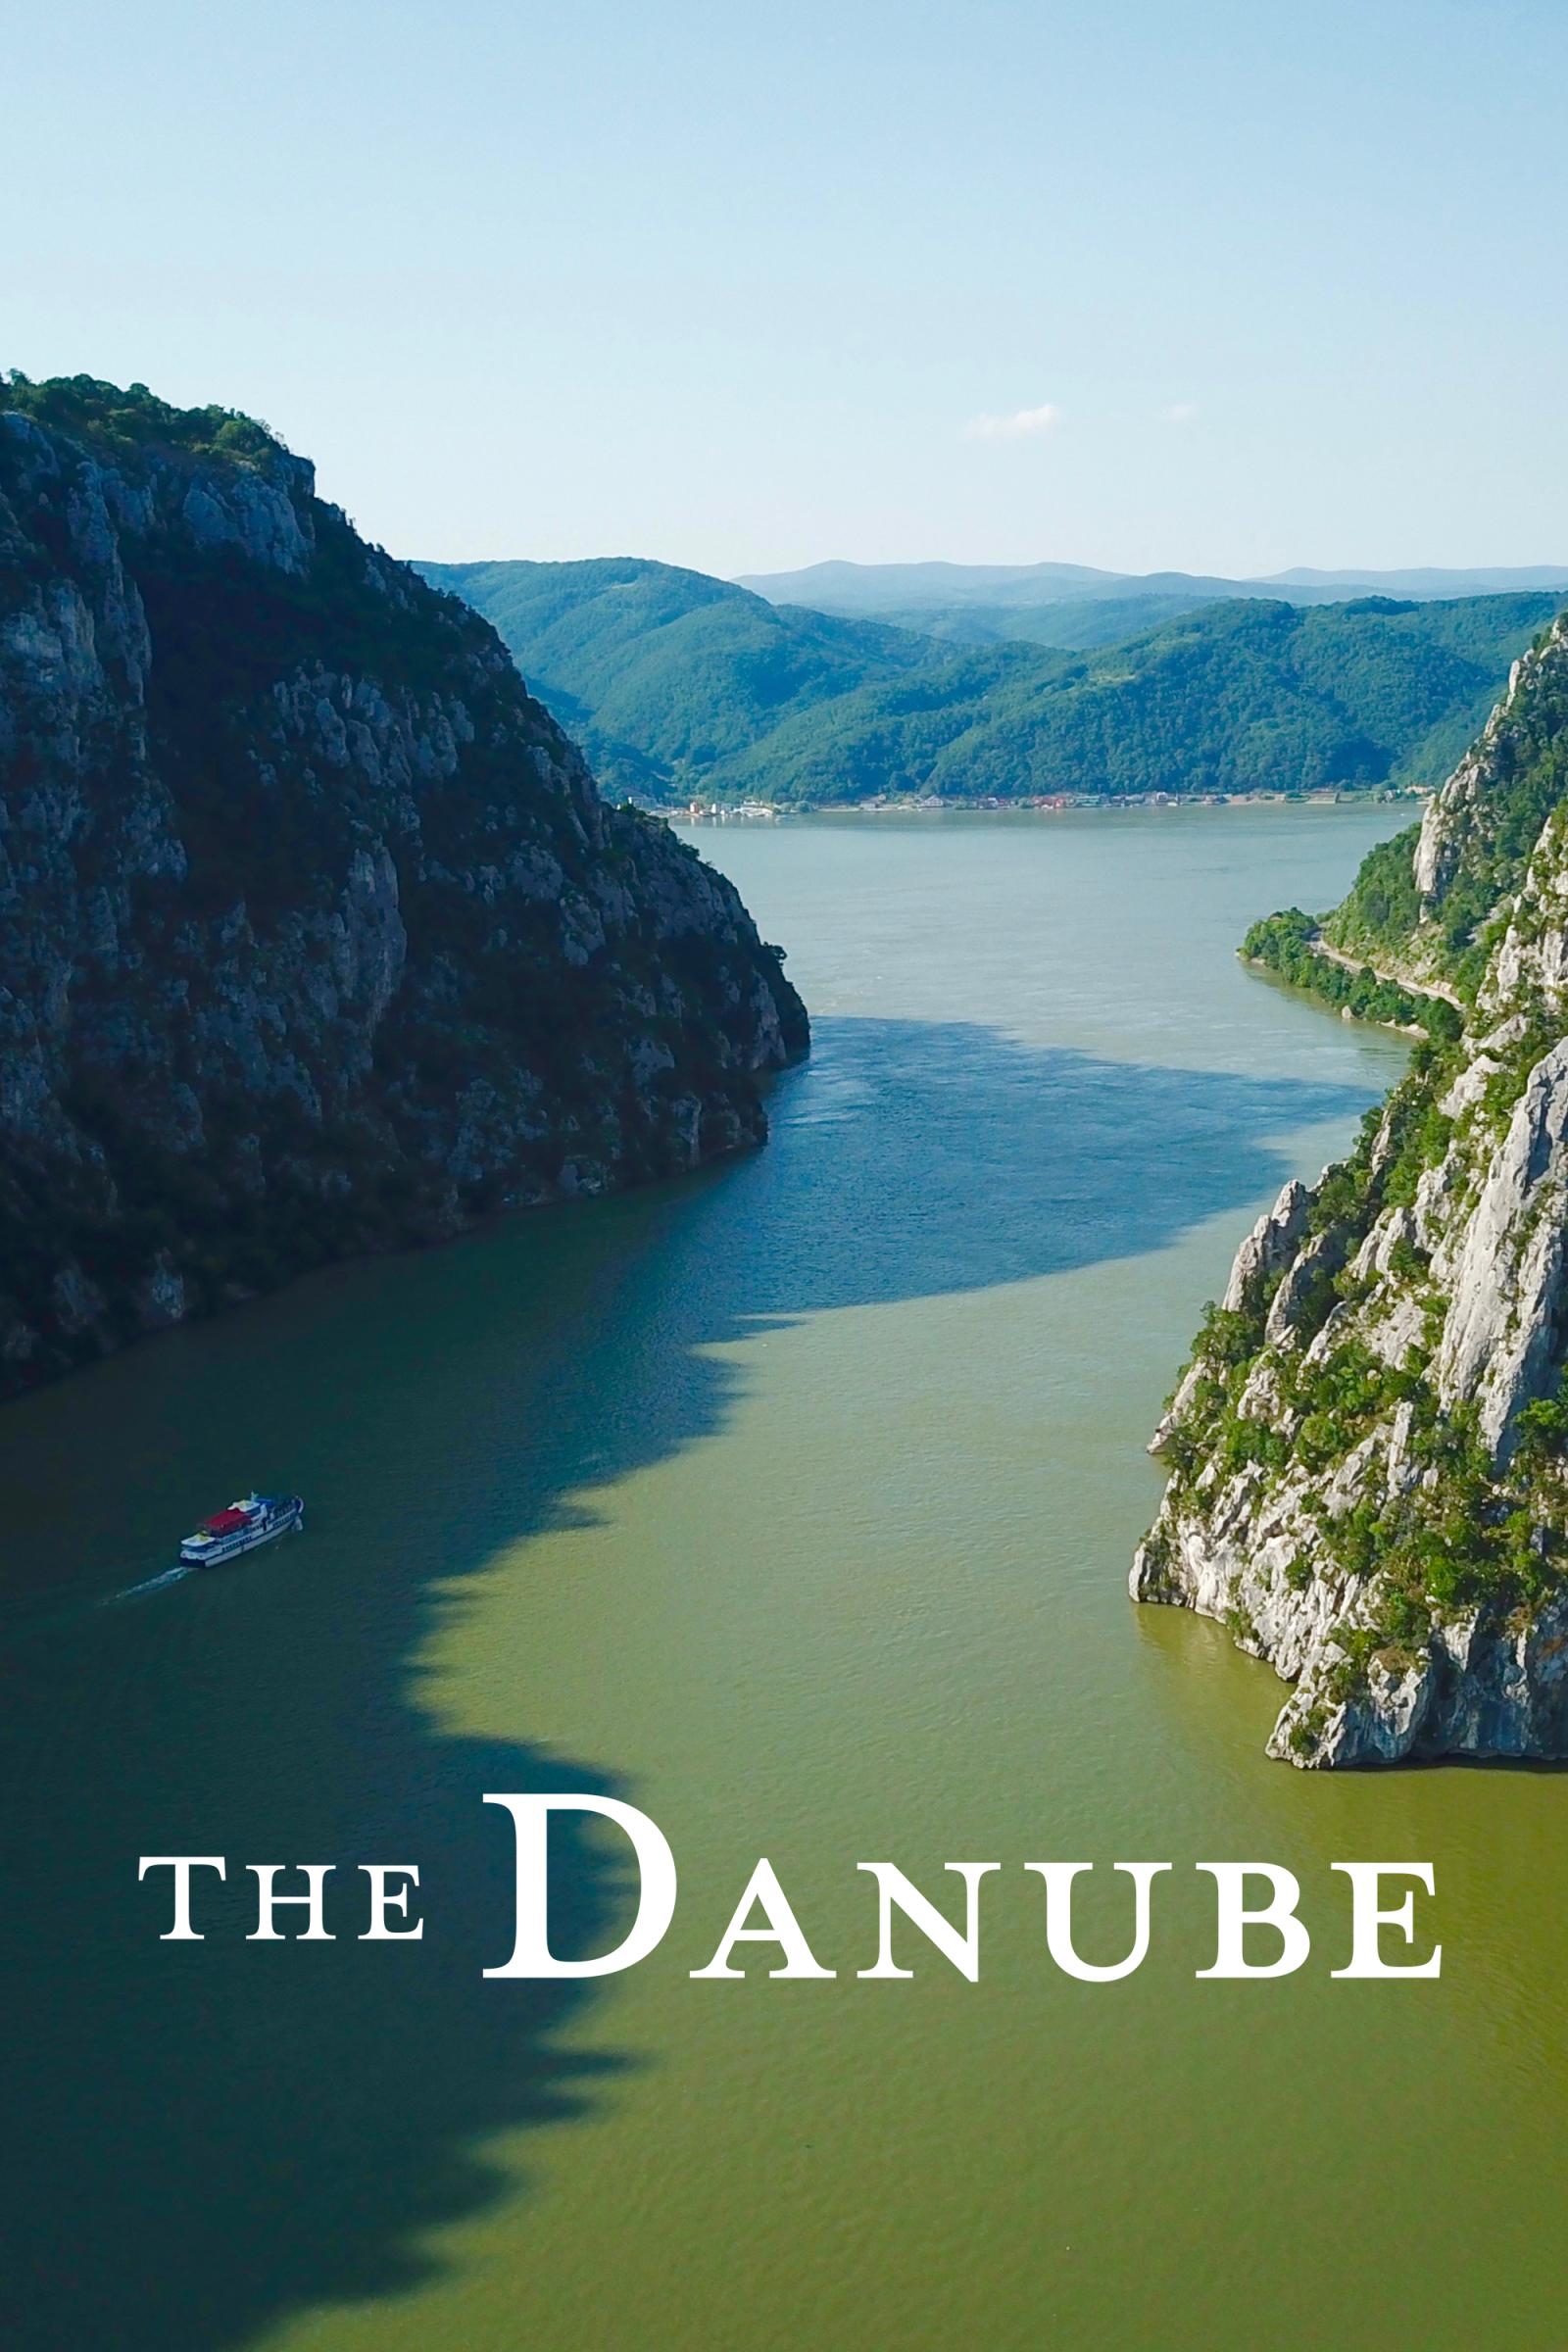 Where to stream The Danube